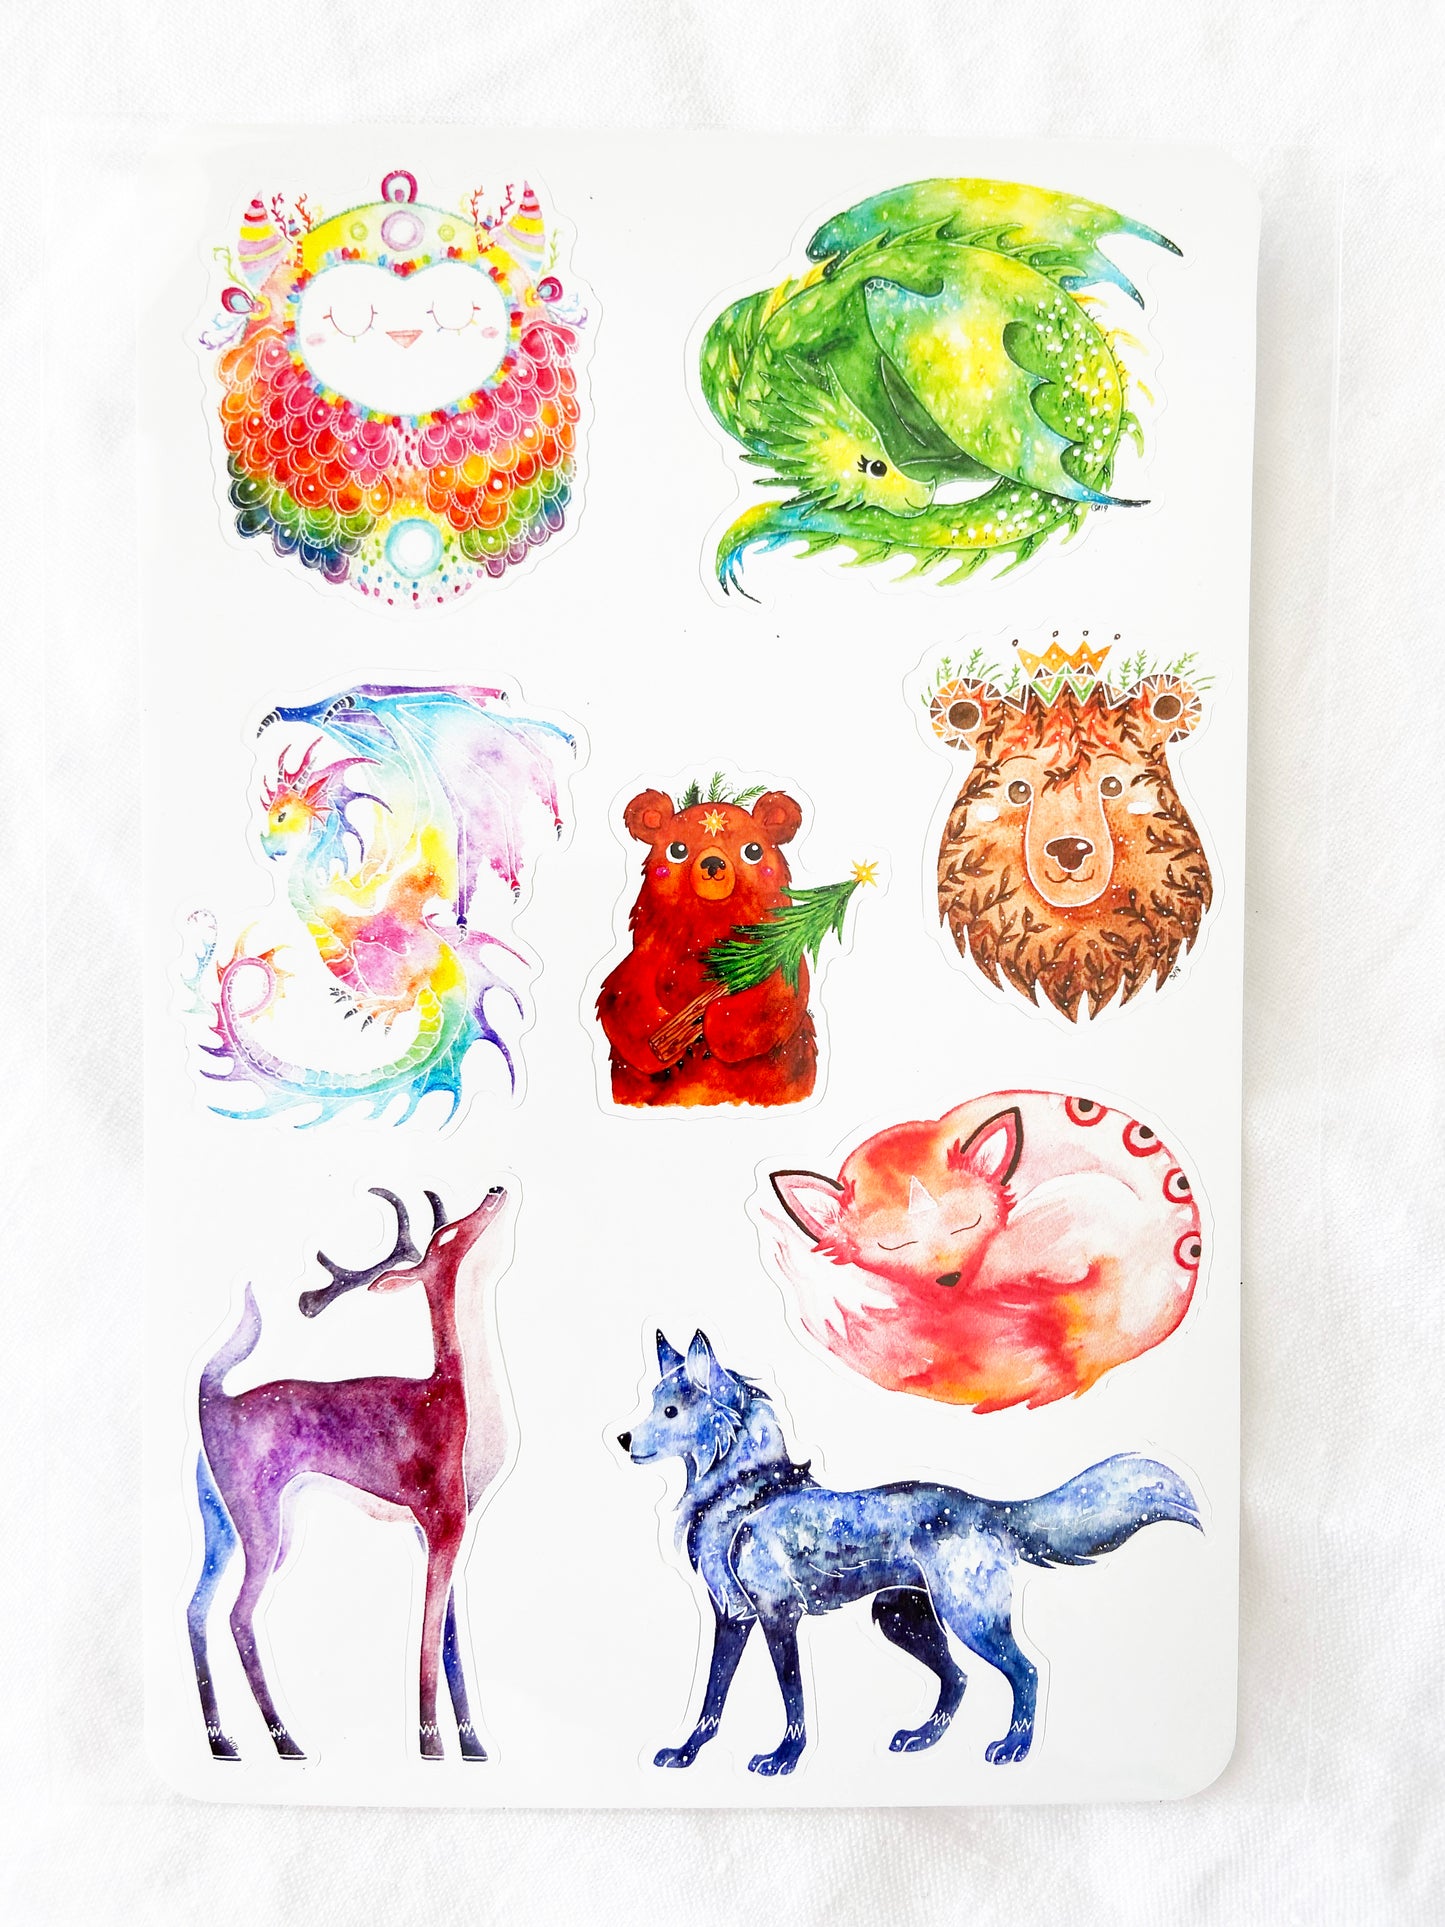 Woodland Animals Sticker Sheet